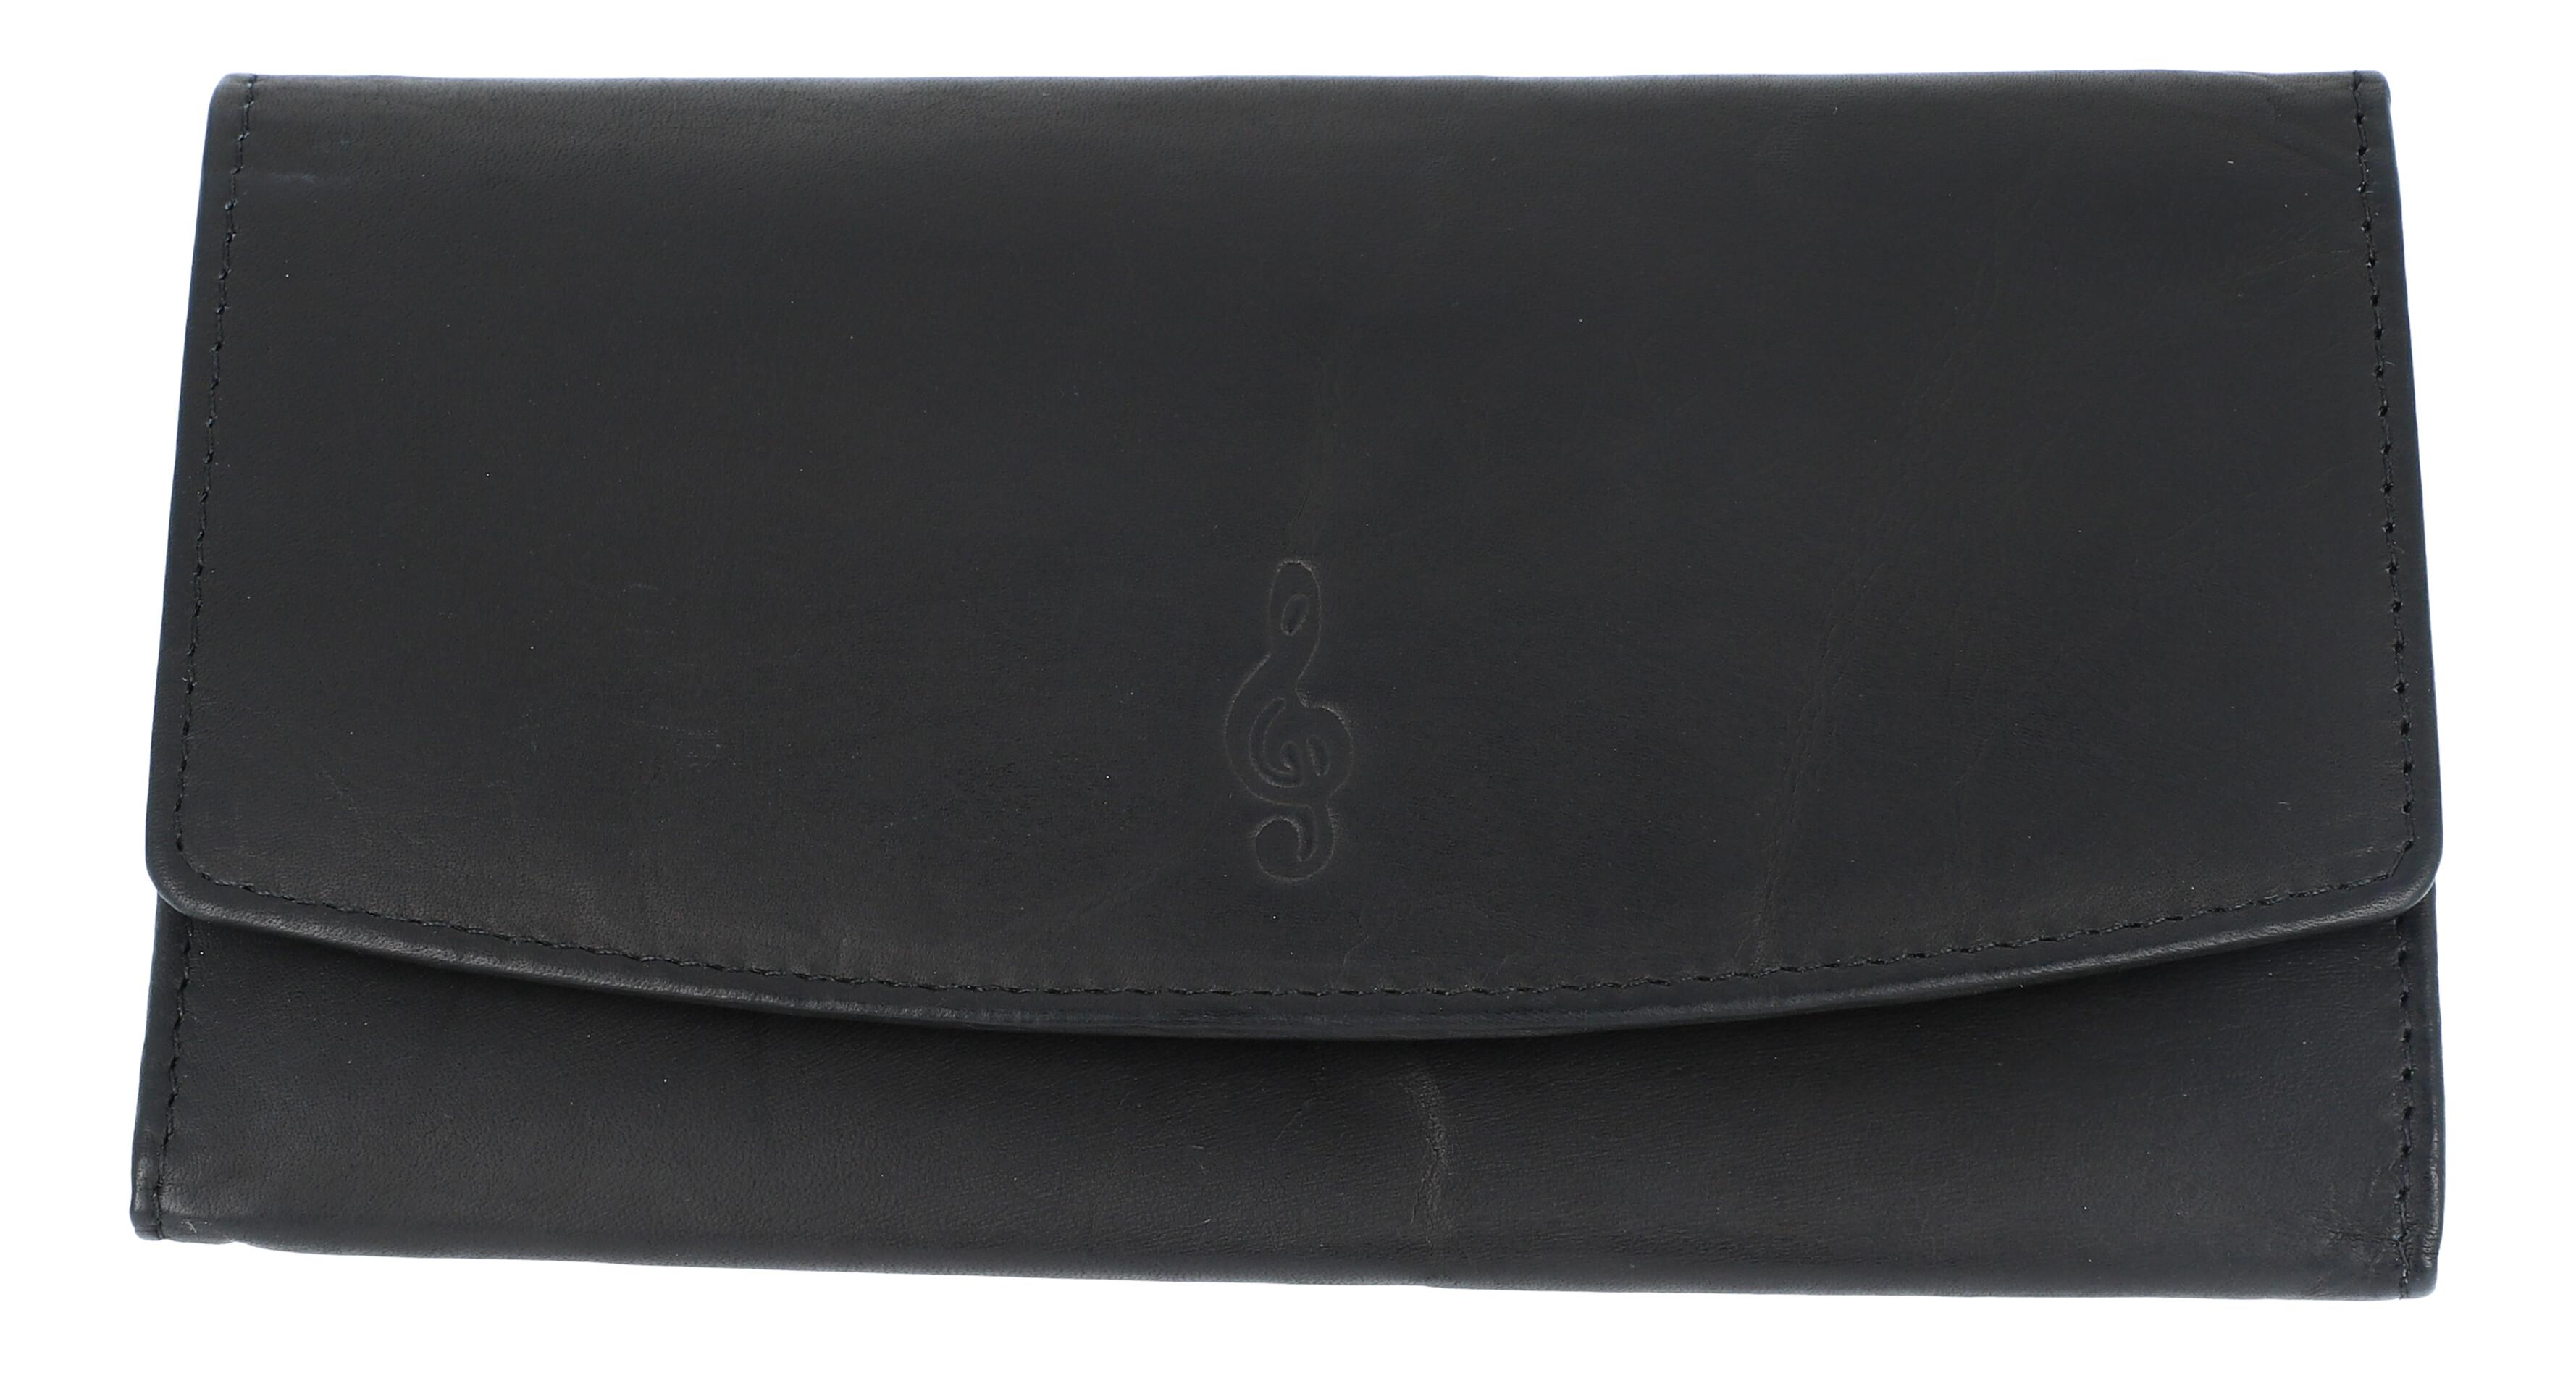 schwarze Leder-Geldbörse im Breitformat mit eingeprägtem Violinschlüssel